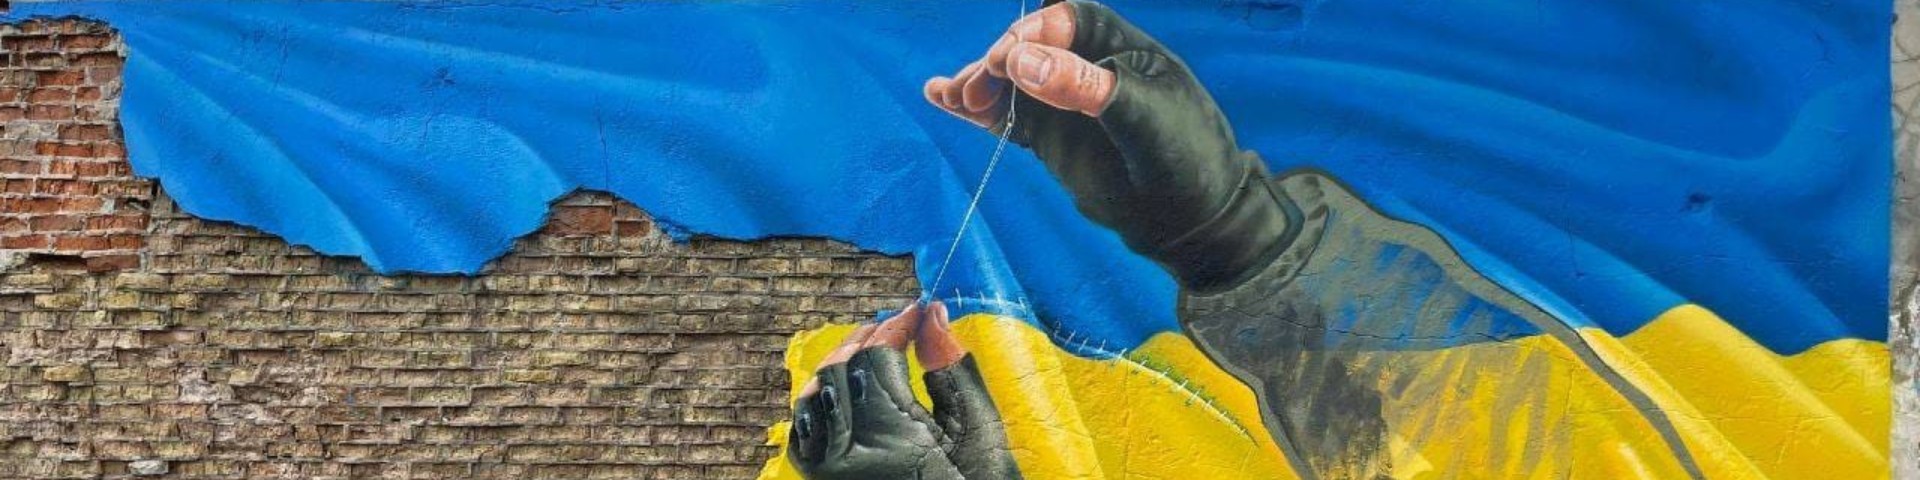 Z Kijowa #16 – List z zachodniej Ukrainy, także naznaczonej wojną